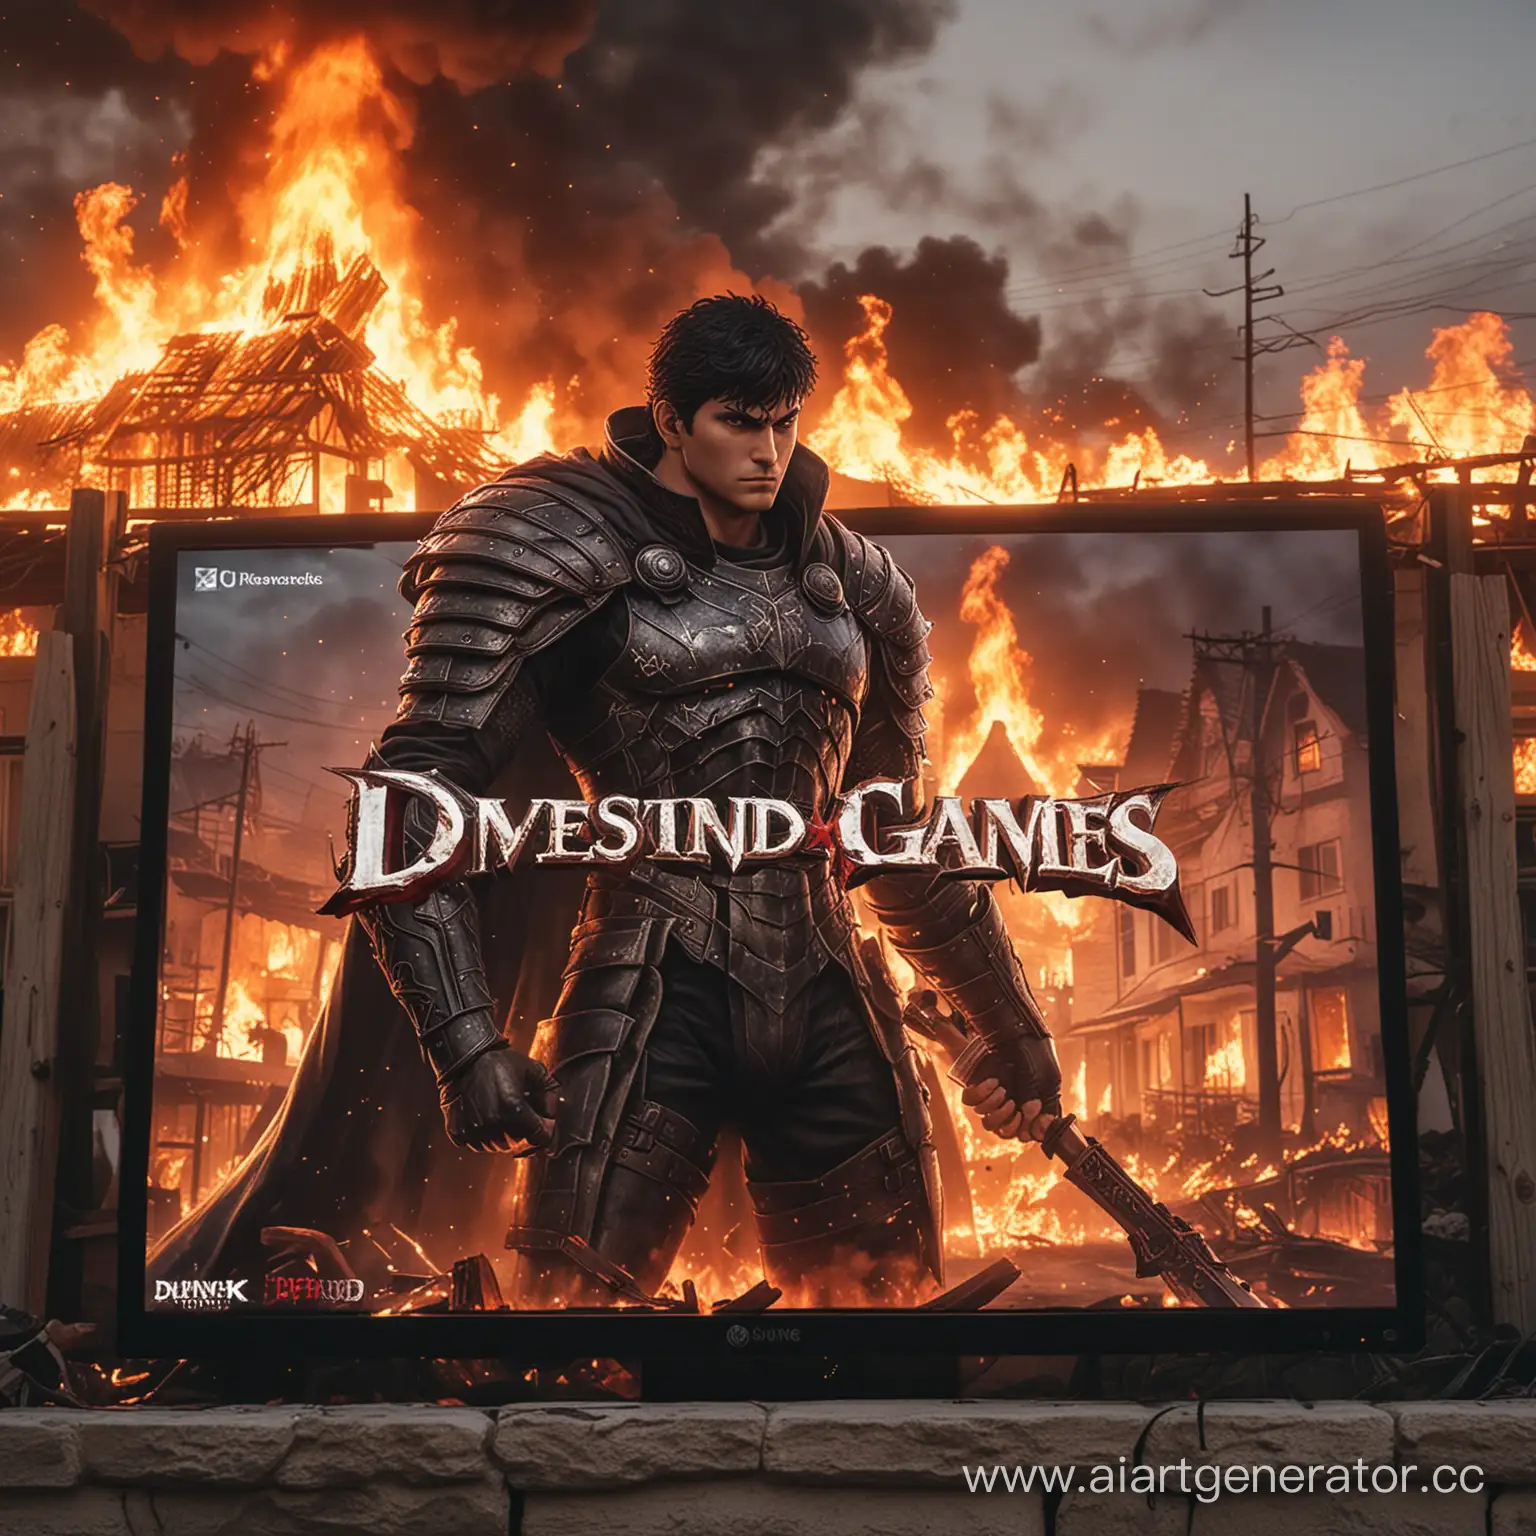 игровая компания "DIVINE studio games" на главном экране магический берсерк повернут полубоком и повернута голова на левую сторону, и он рассевается на фоне горящие дома размытые 